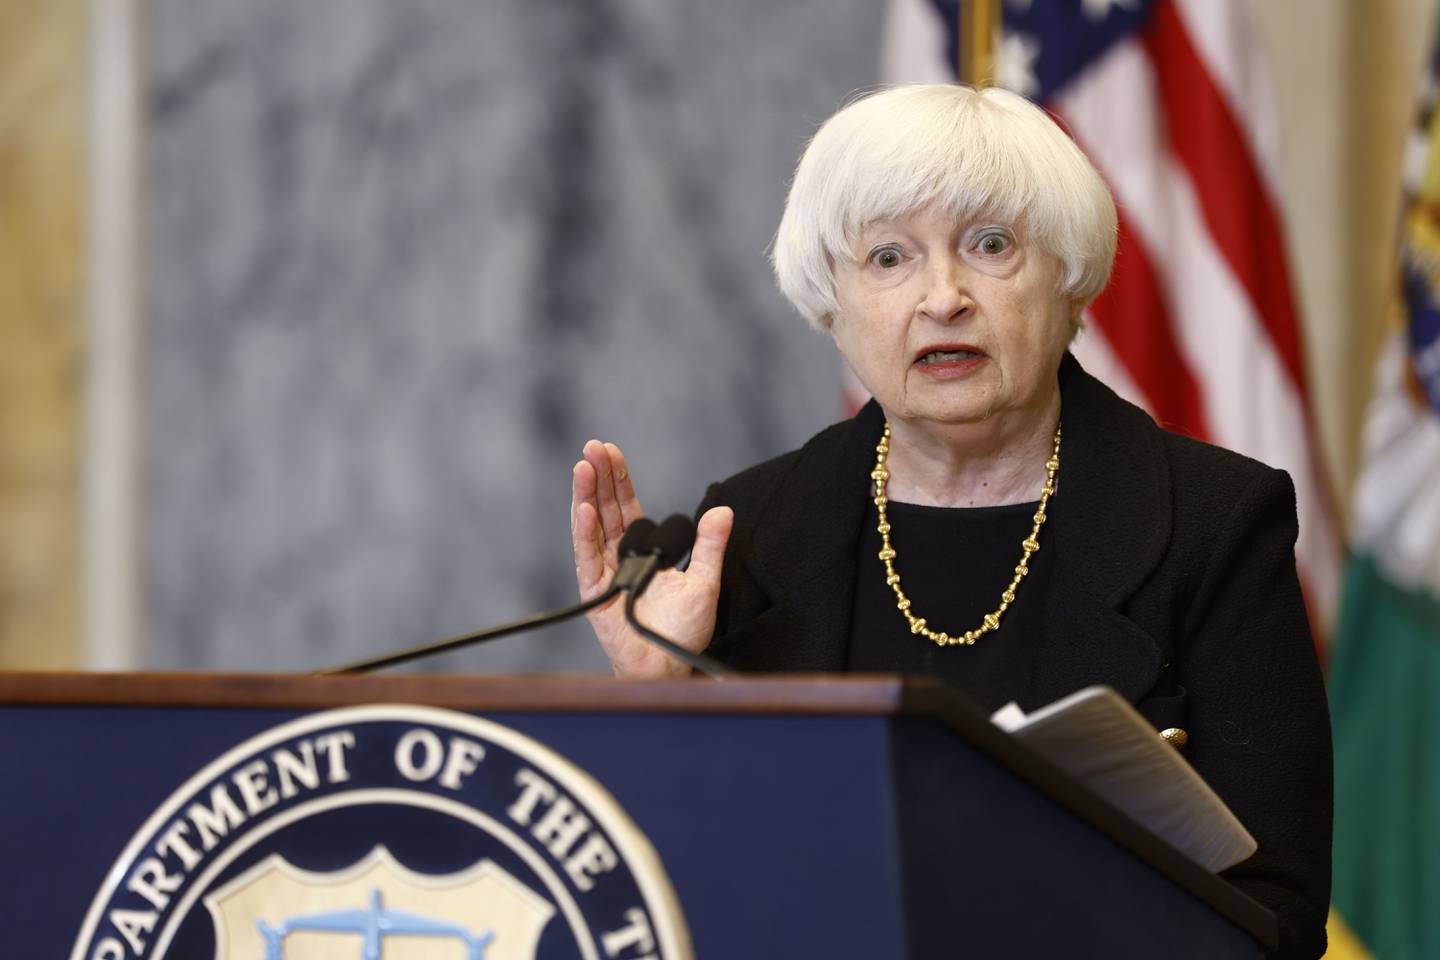 Para Yellen, é possível que o Fed tenha sorte e a alie com suas habilidades